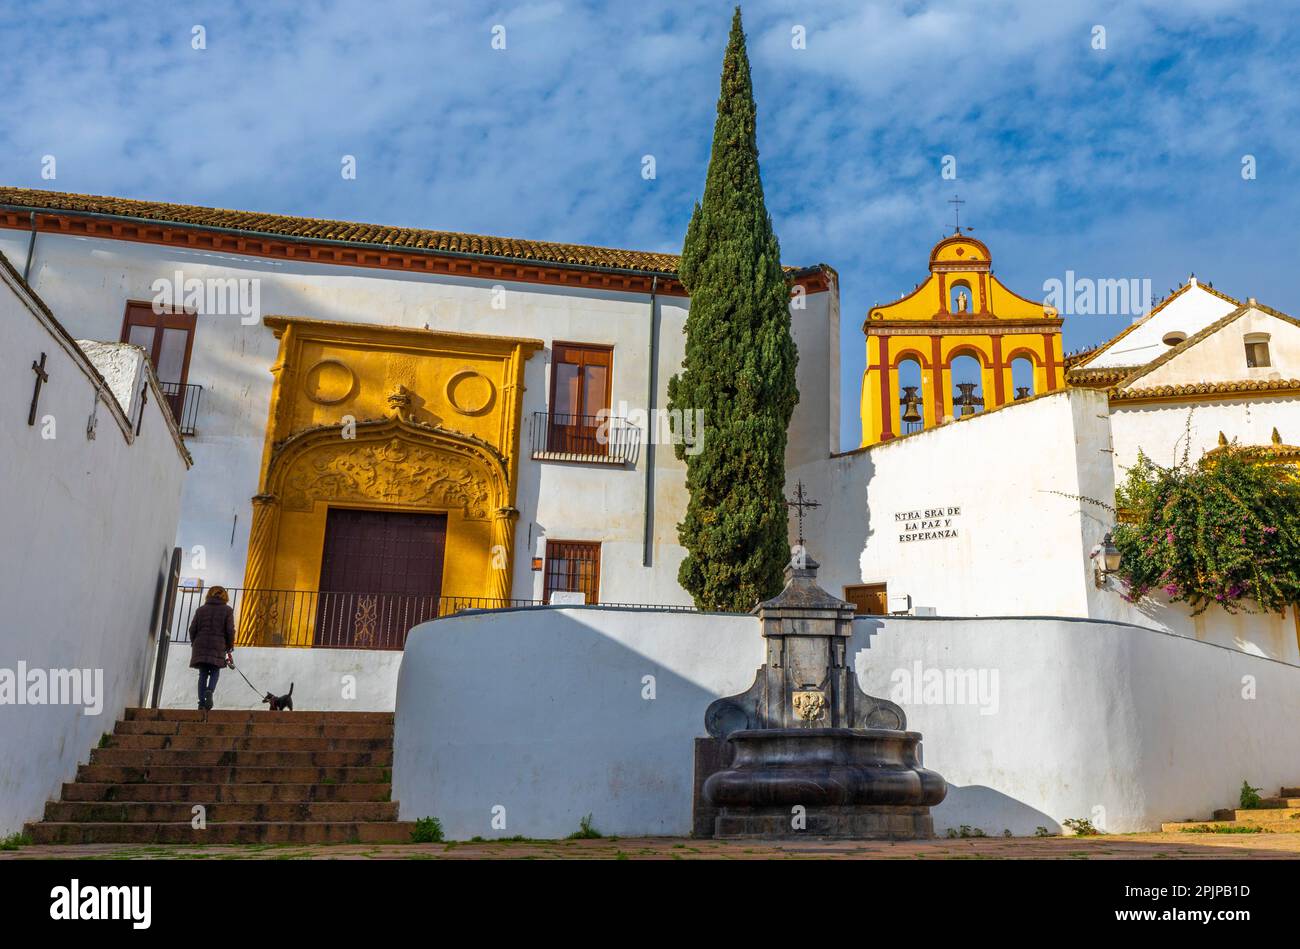 Plaza Nuestra Señora de la Paz y Esperanza, Cordoba, Andalusia, Spain, South West Europe Stock Photo